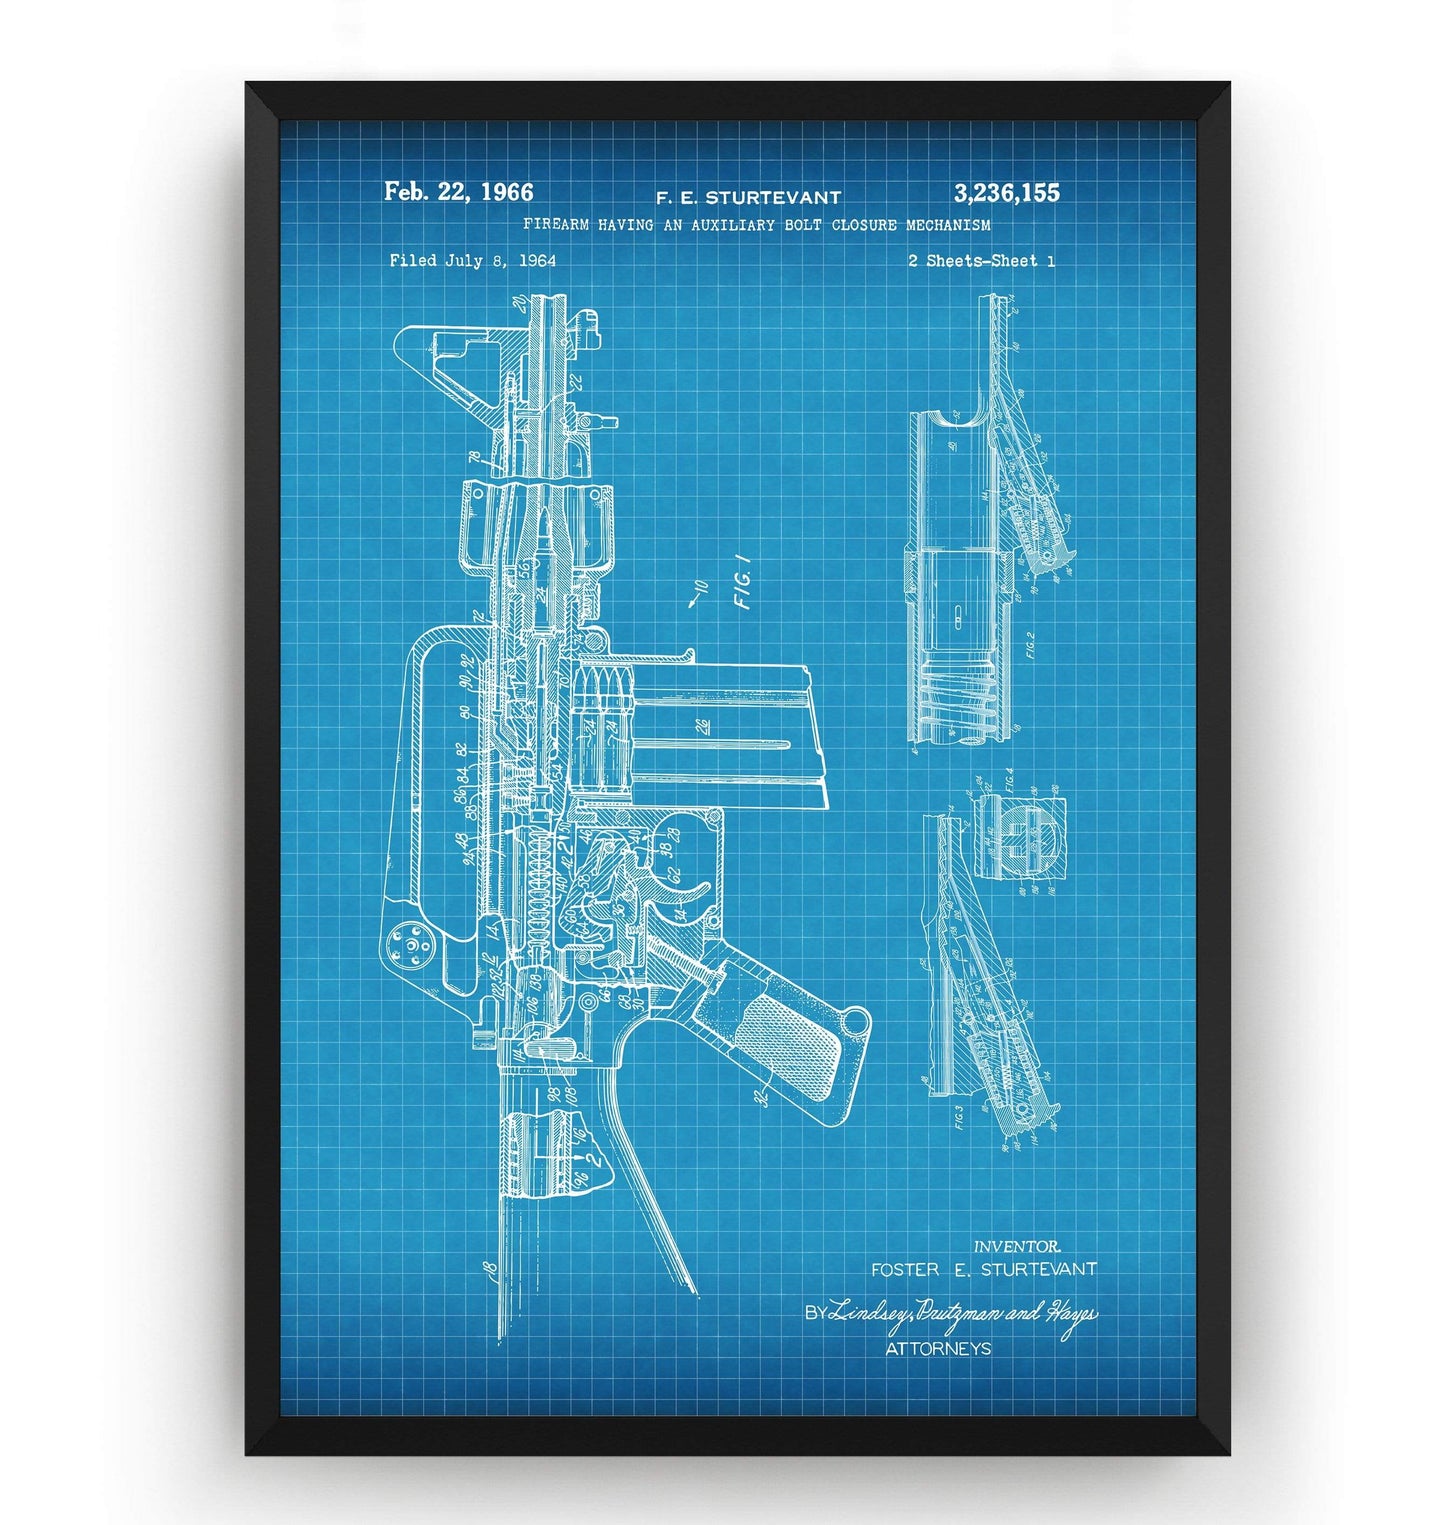 M-16 Patent Print - Magic Posters